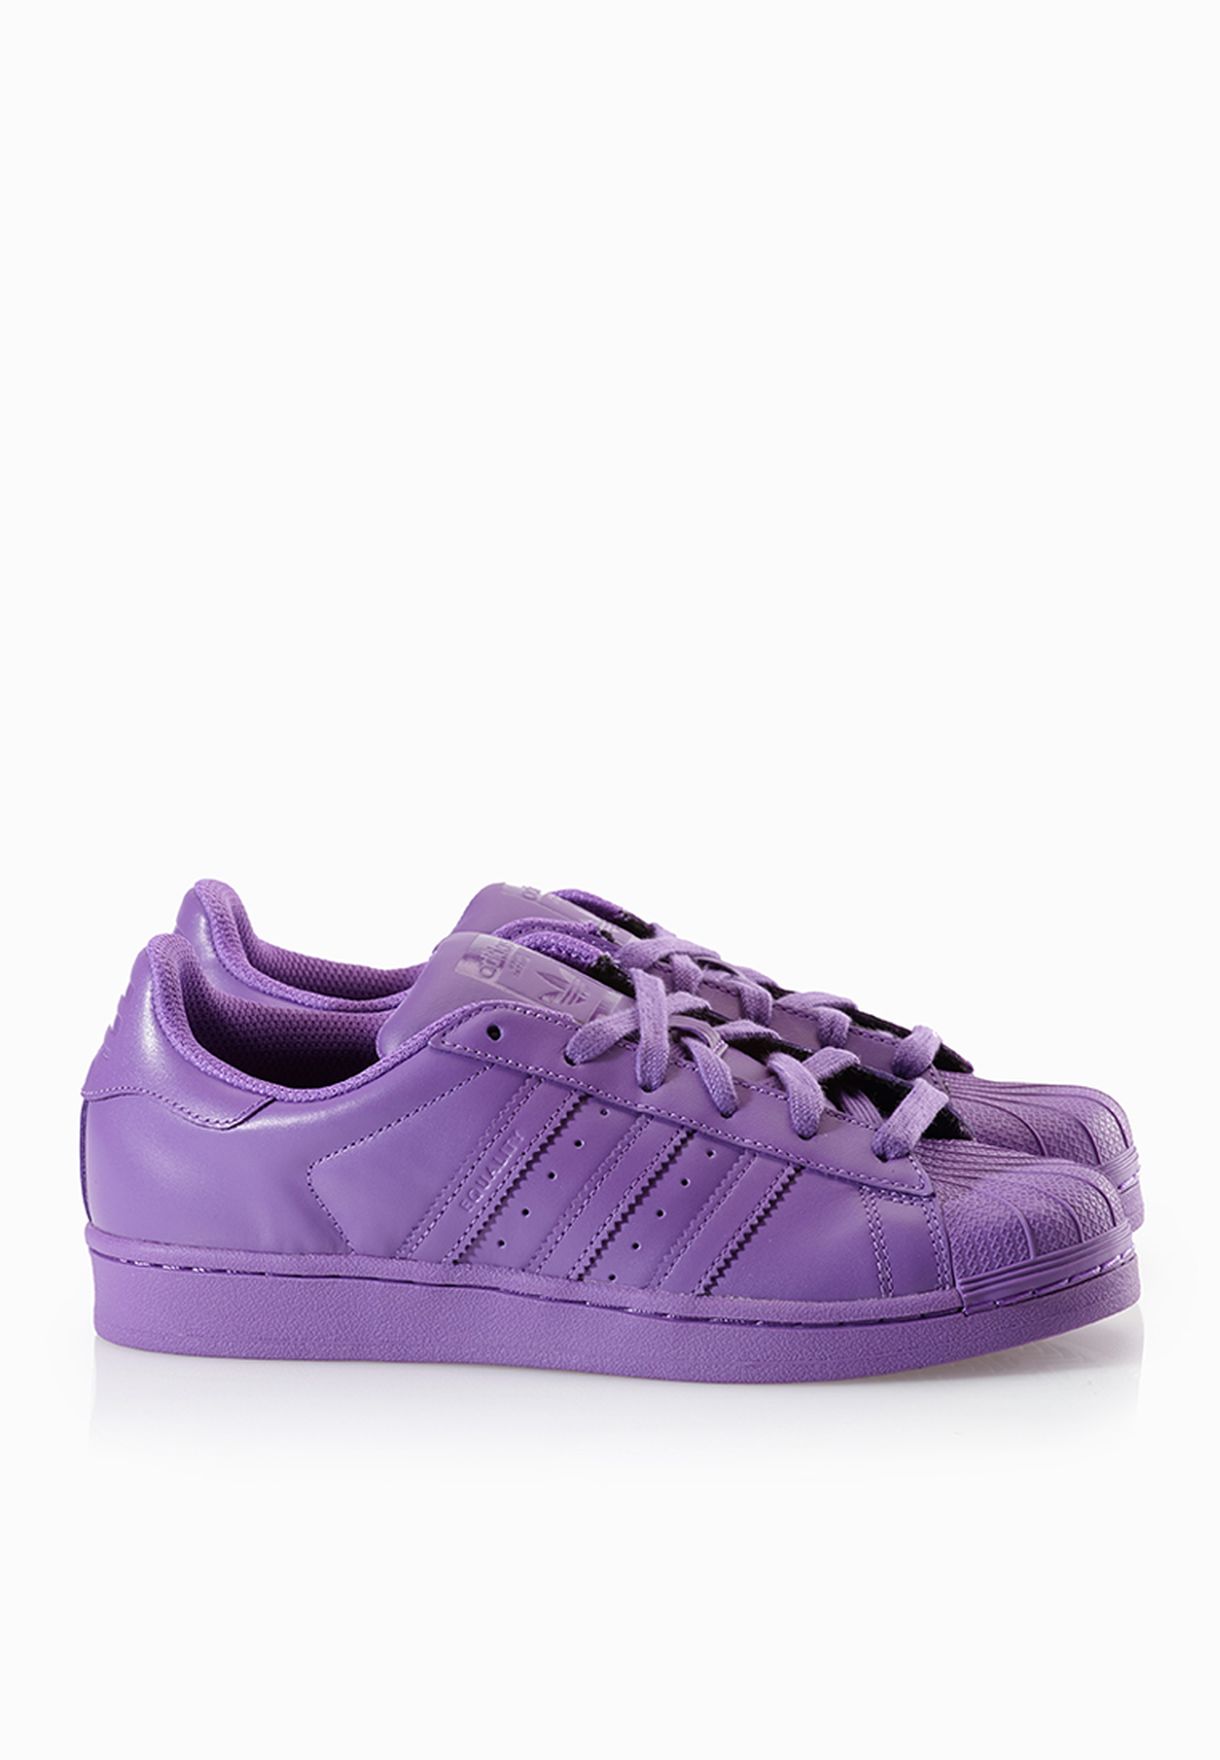 purple pharrell williams adidas